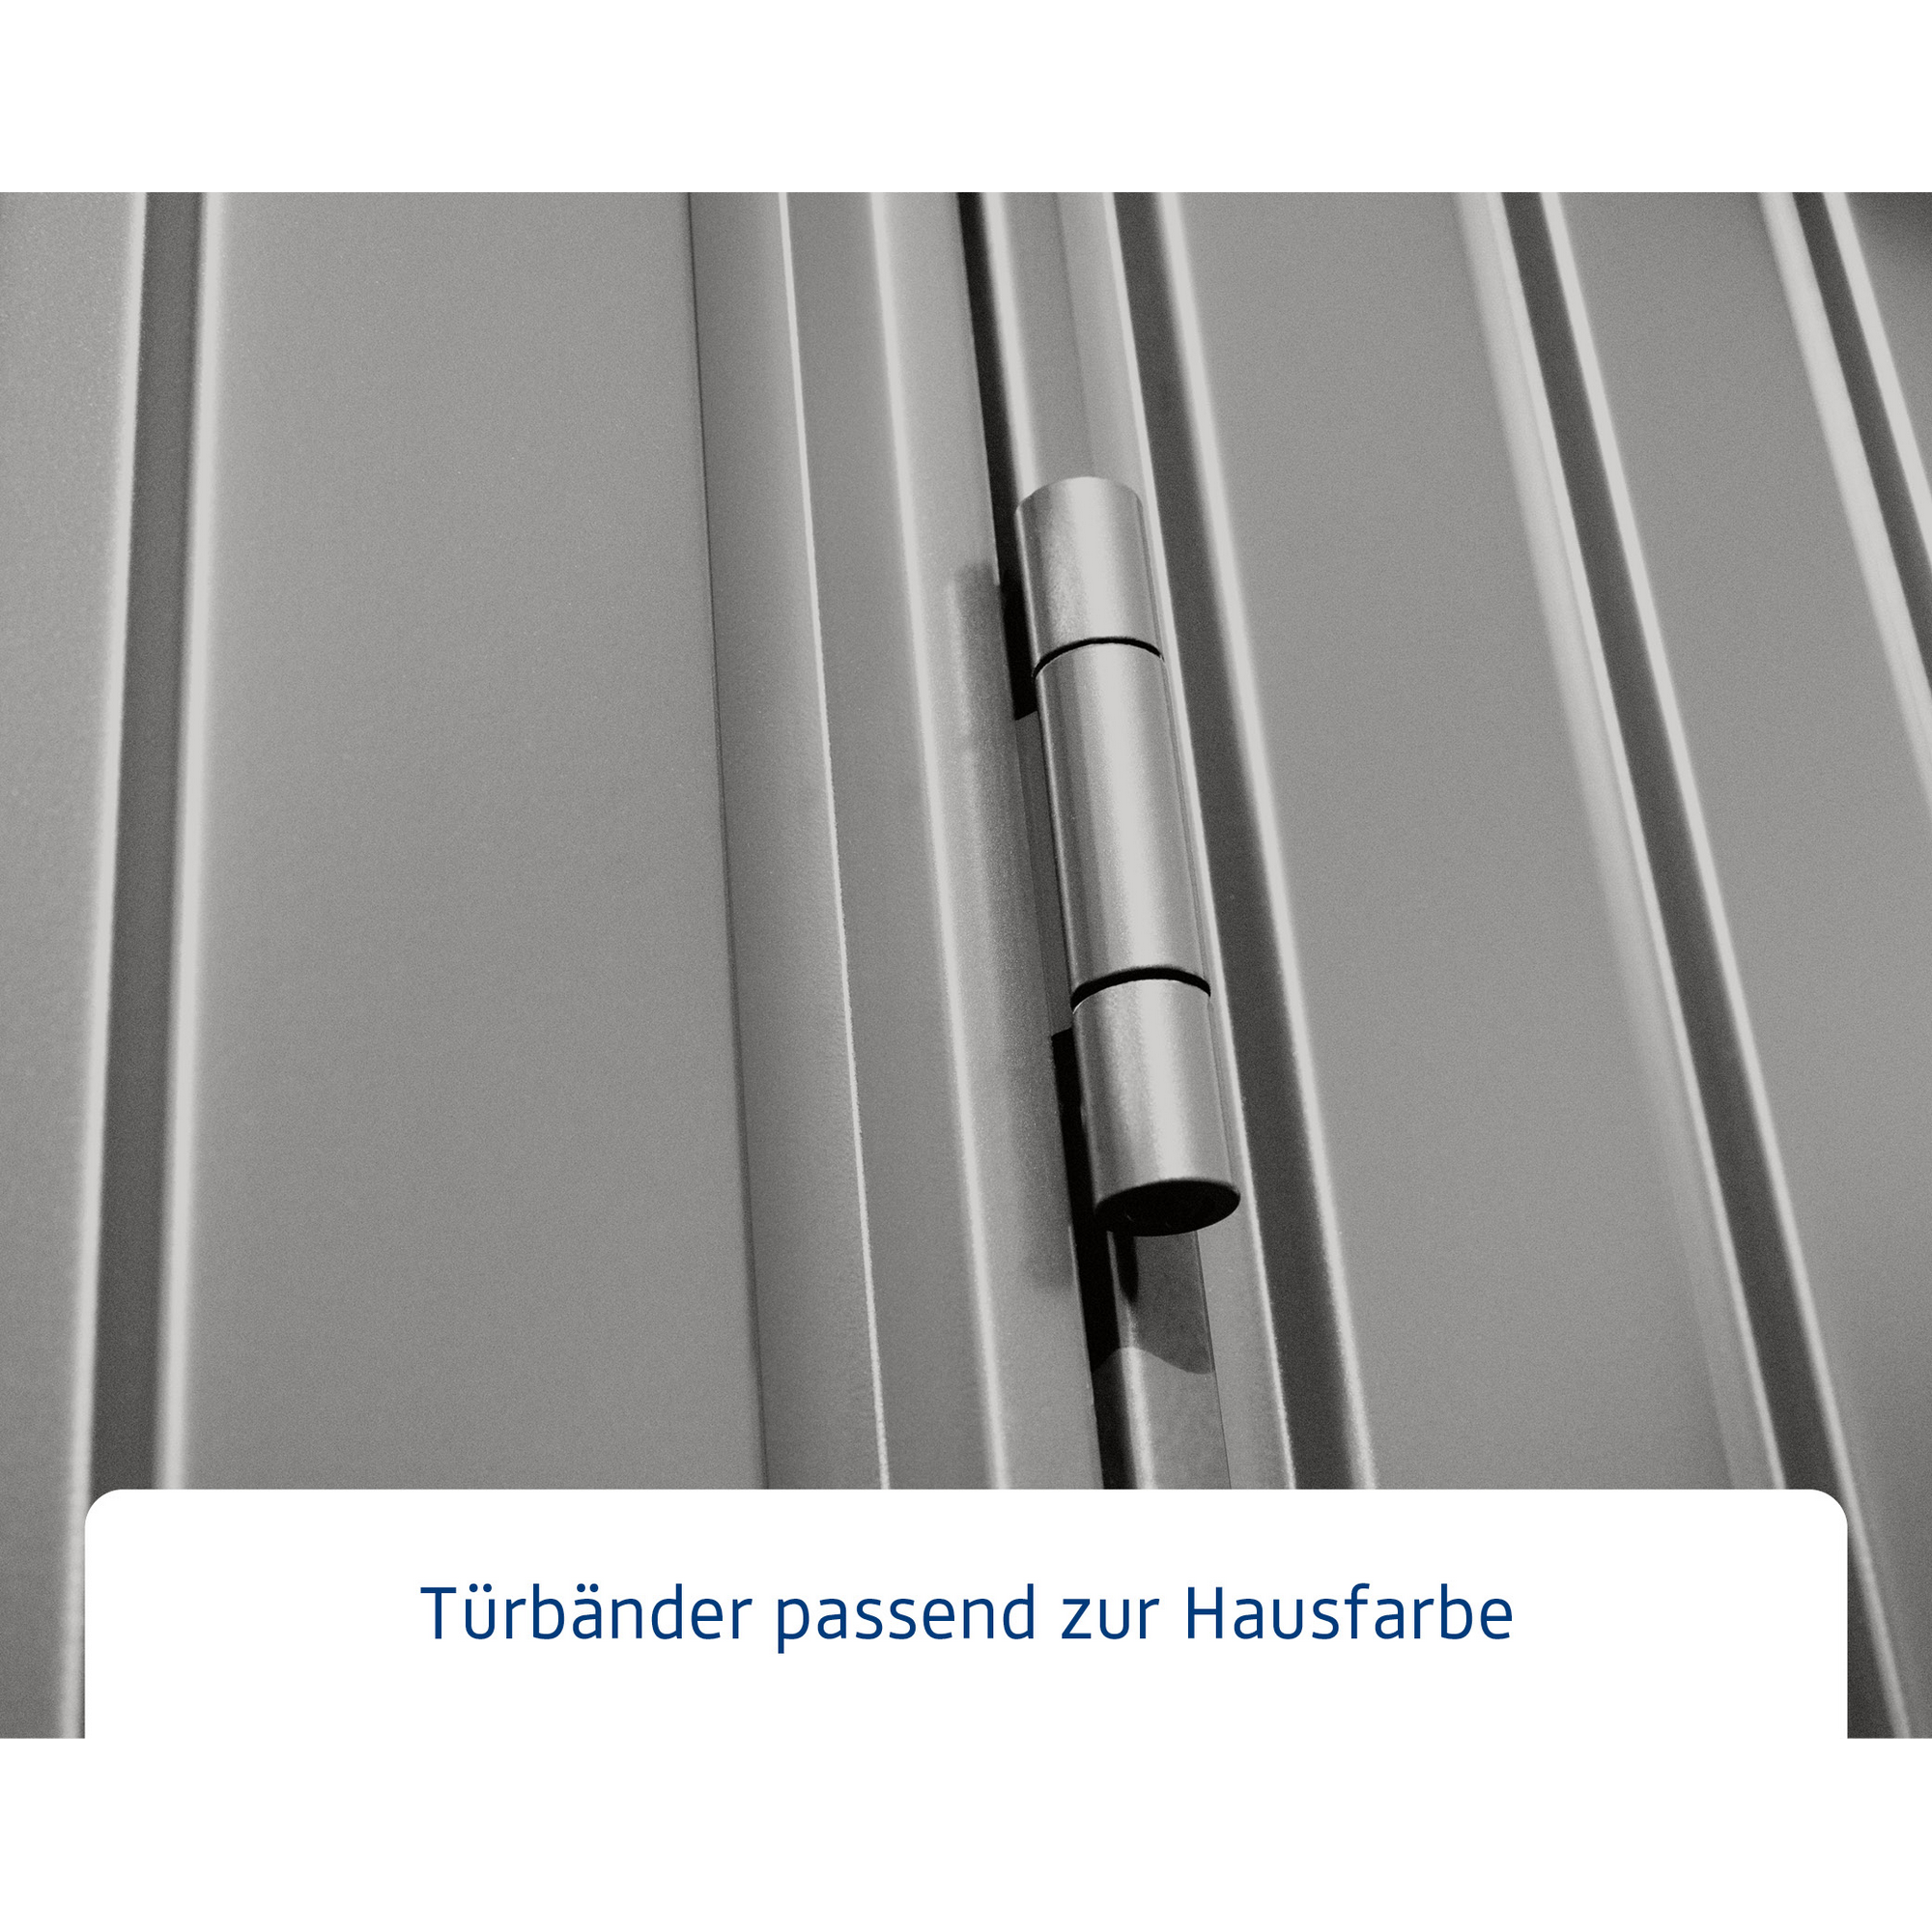 Gerätehaus 'Trend-P Typ 3' graualuminium 302,8 x 238 cm, mit Doppeltür + product picture